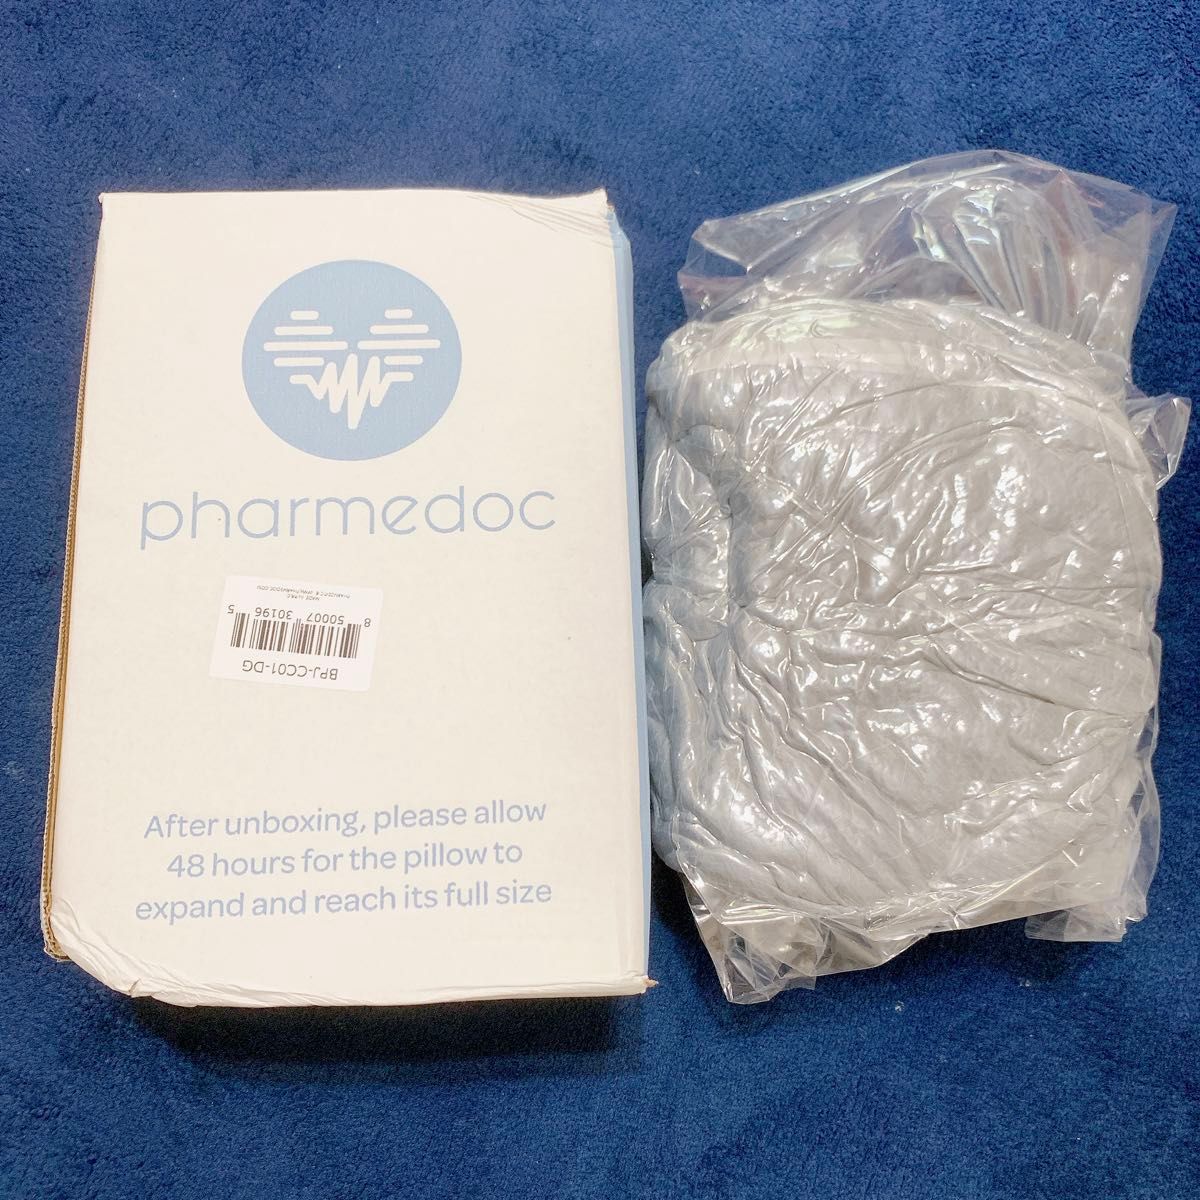 PharMeDoc 抱き枕 冷却  (108x48cm) 妊婦 腹部をサポート カバー洗える クッション 全身サポート 洗濯可能